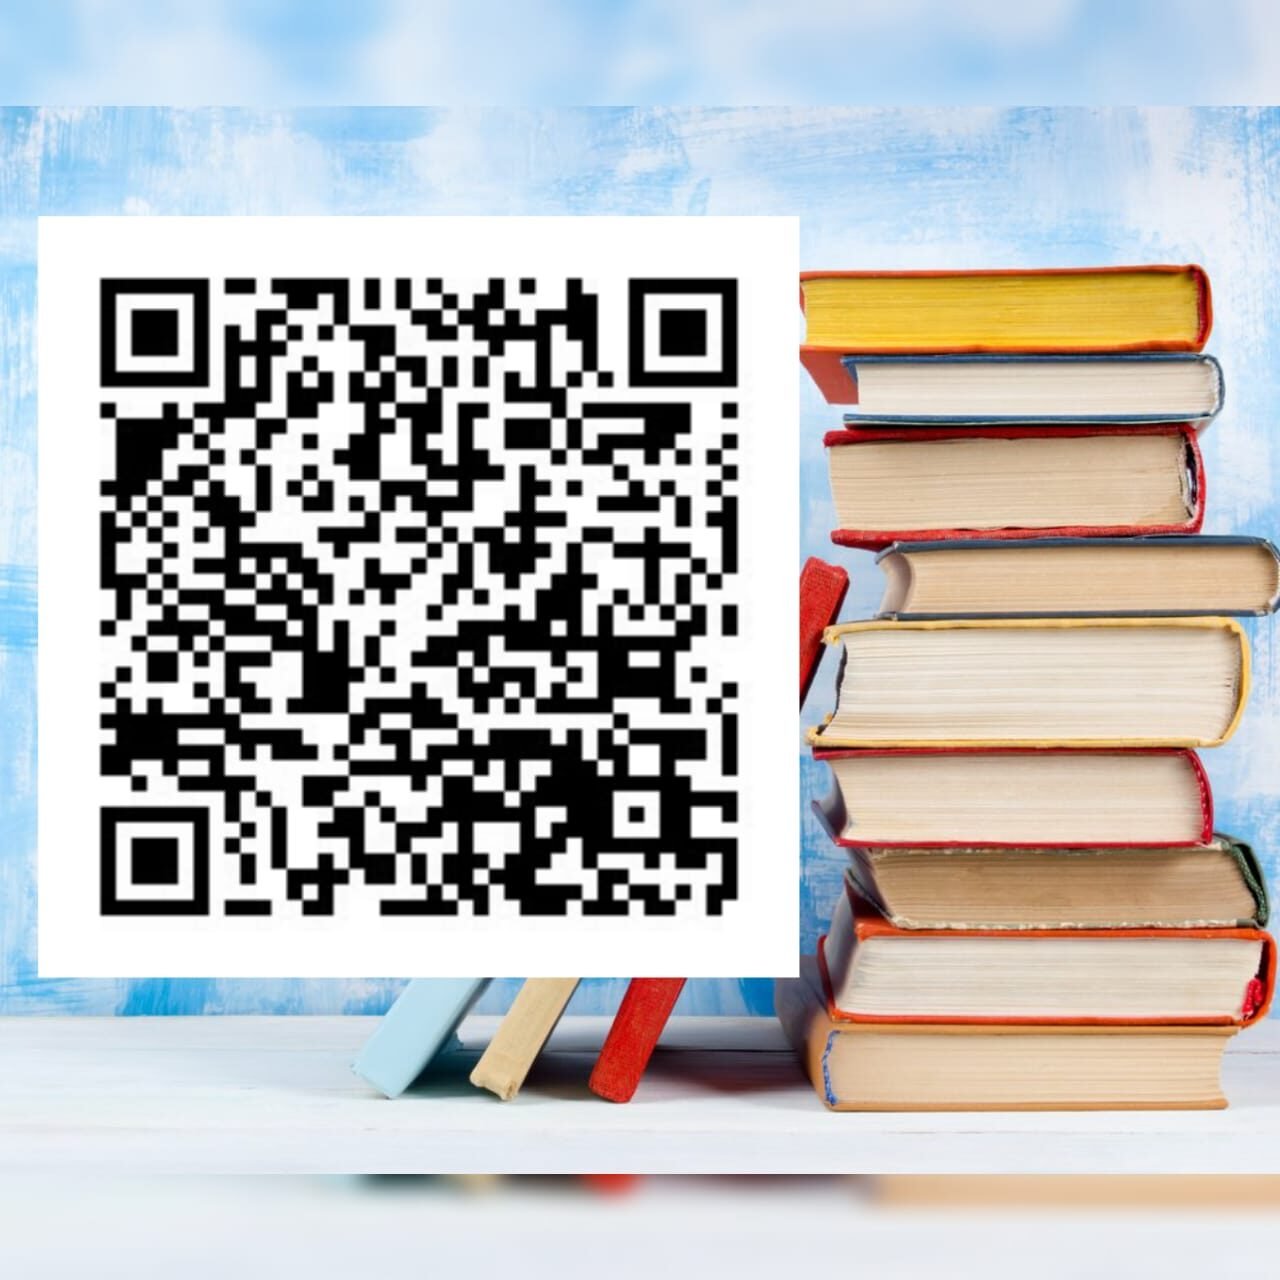 Всероссийское исследование «Чтение и библиотека в жизни детской и взрослой аудитории»